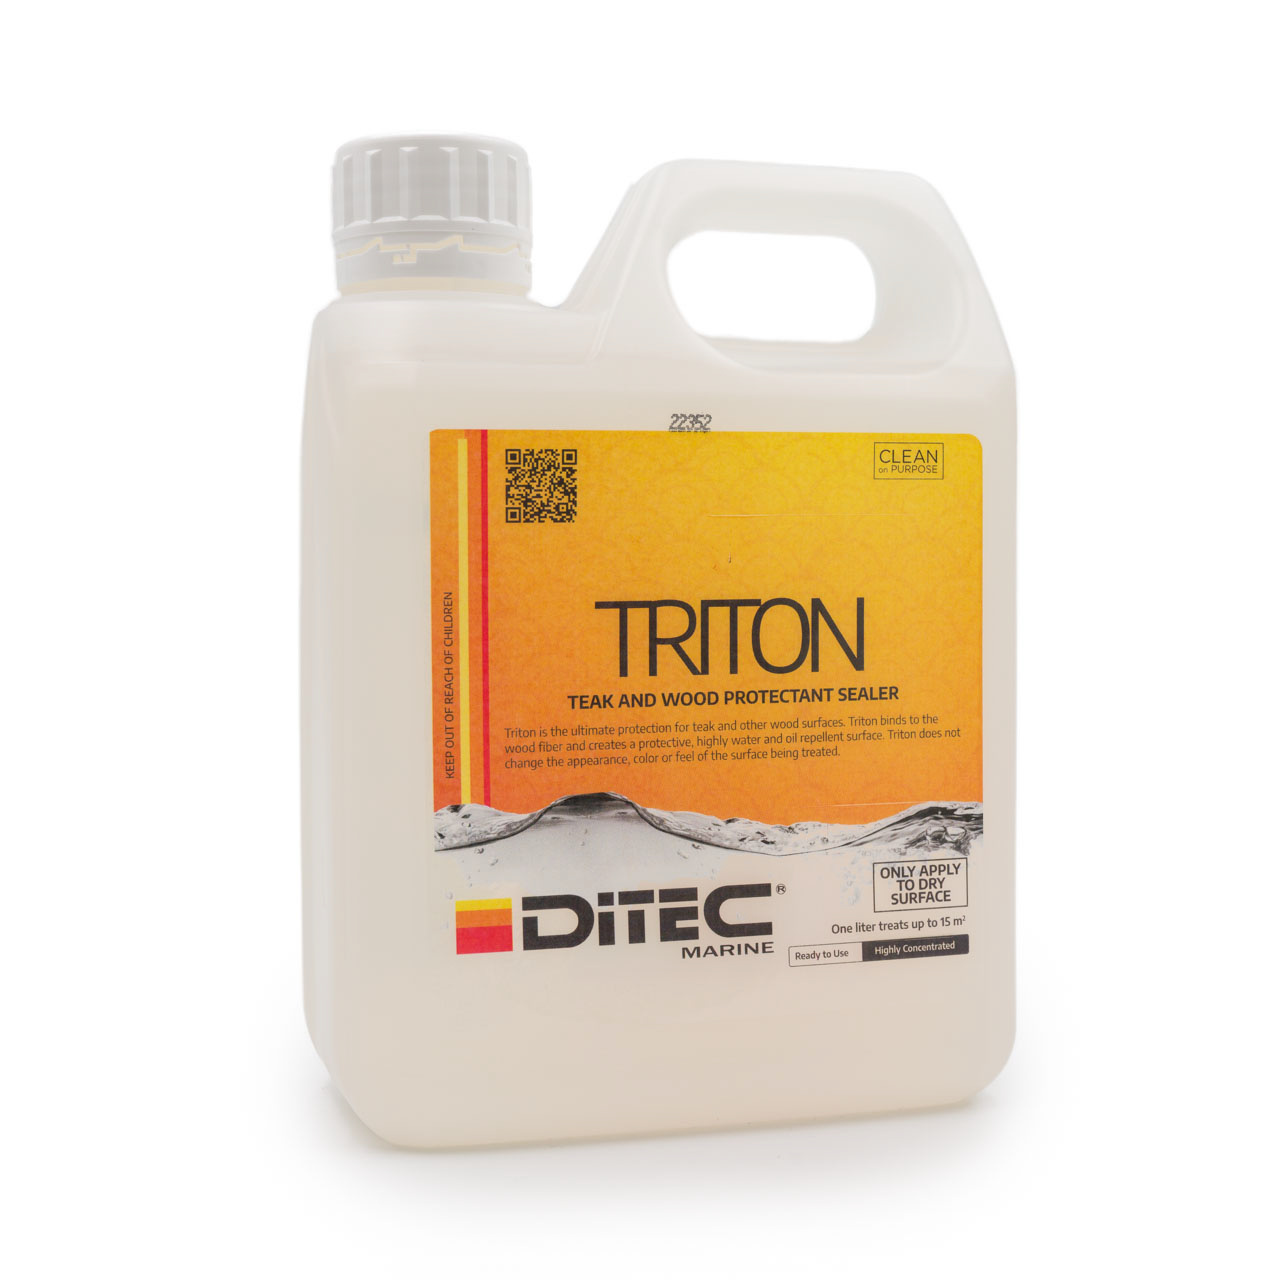 Ditec Triton Teak Sealer, 1 Liter (1 box = 5 liter drums)